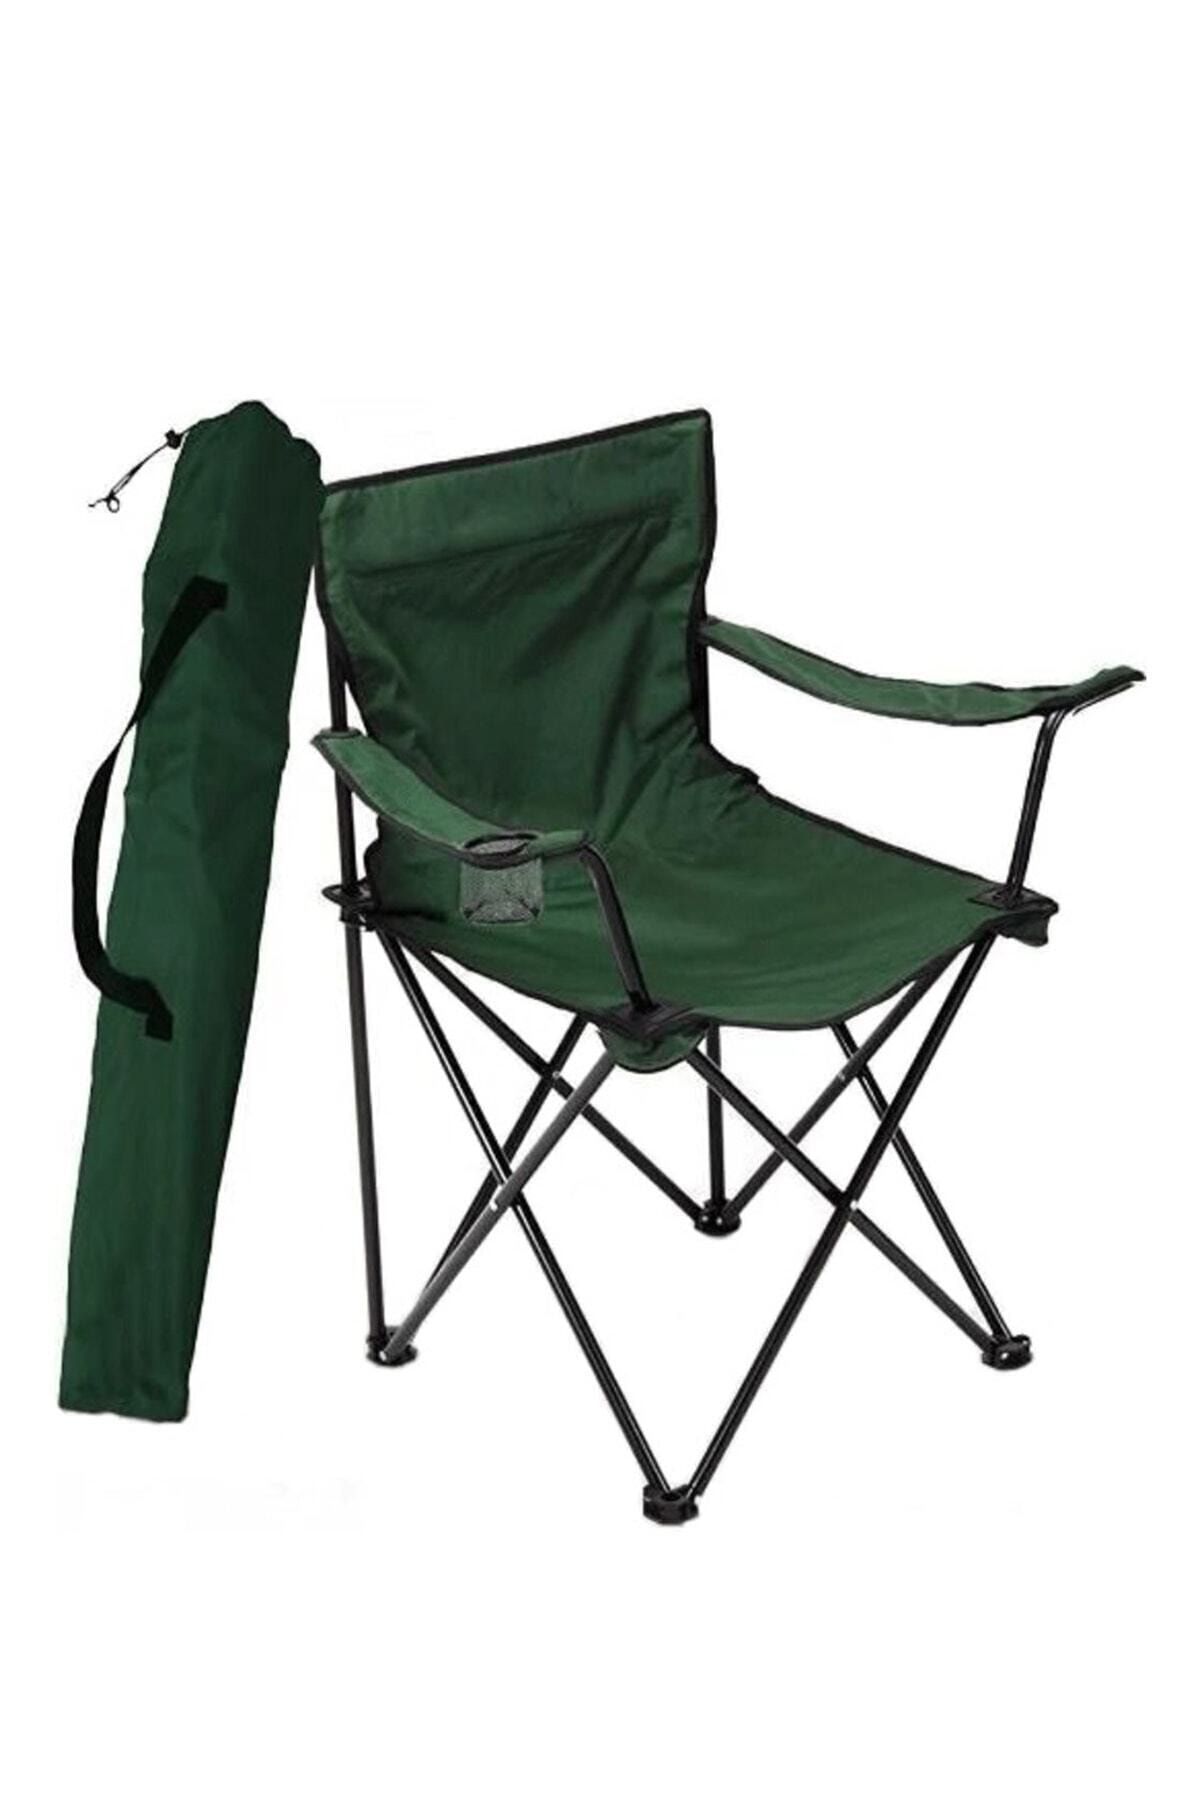 Bofigo Tekli Kamp Sandalyesi Katlanır Sandalye Bahçe Koltuğu Piknik Plaj Balkon Sandalyesi Yeşil